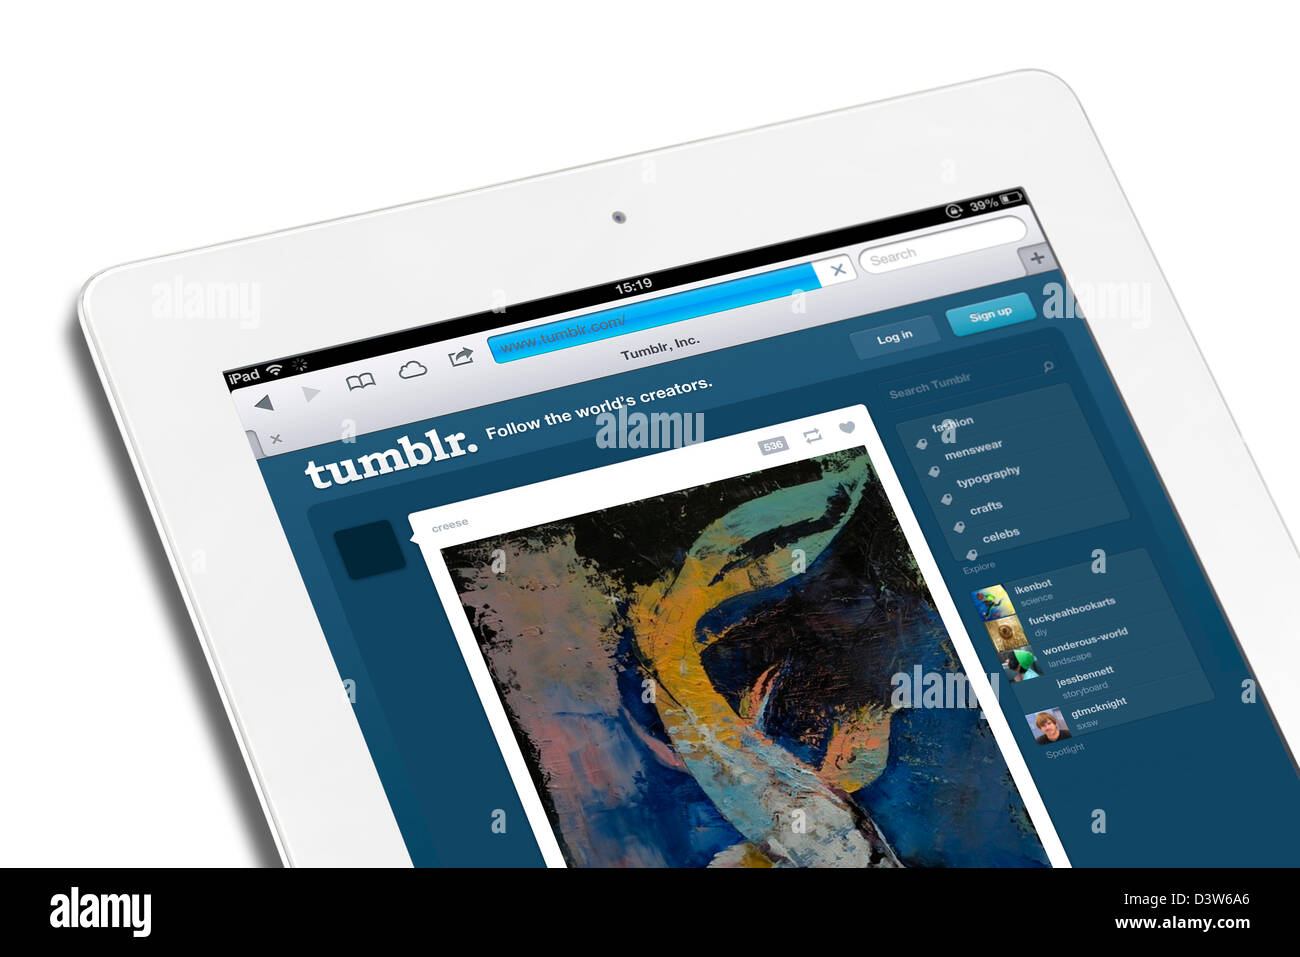 Tumblr, las redes sociales y sitios de microblogging, vistos en una 4ª generación de Apple iPad Foto de stock